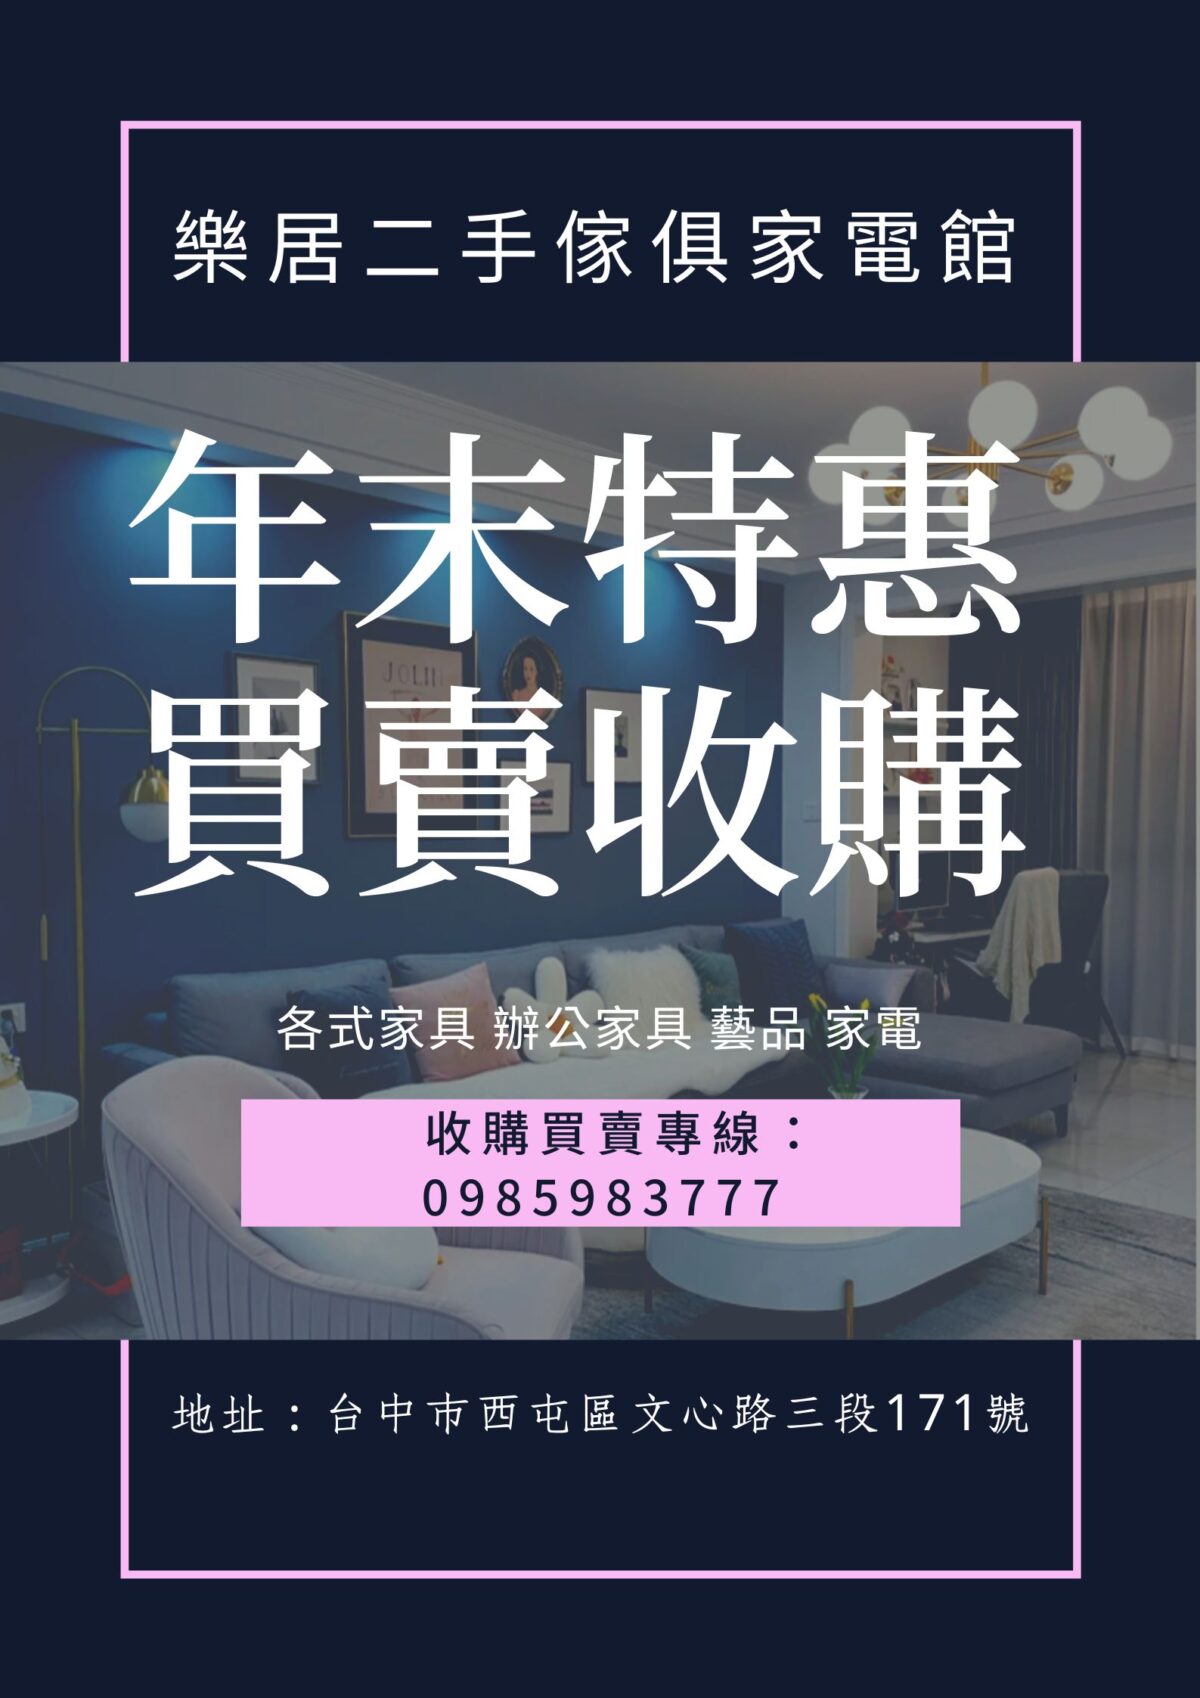 紫色深藍色邊框化妝美容繁體中文廣告海報